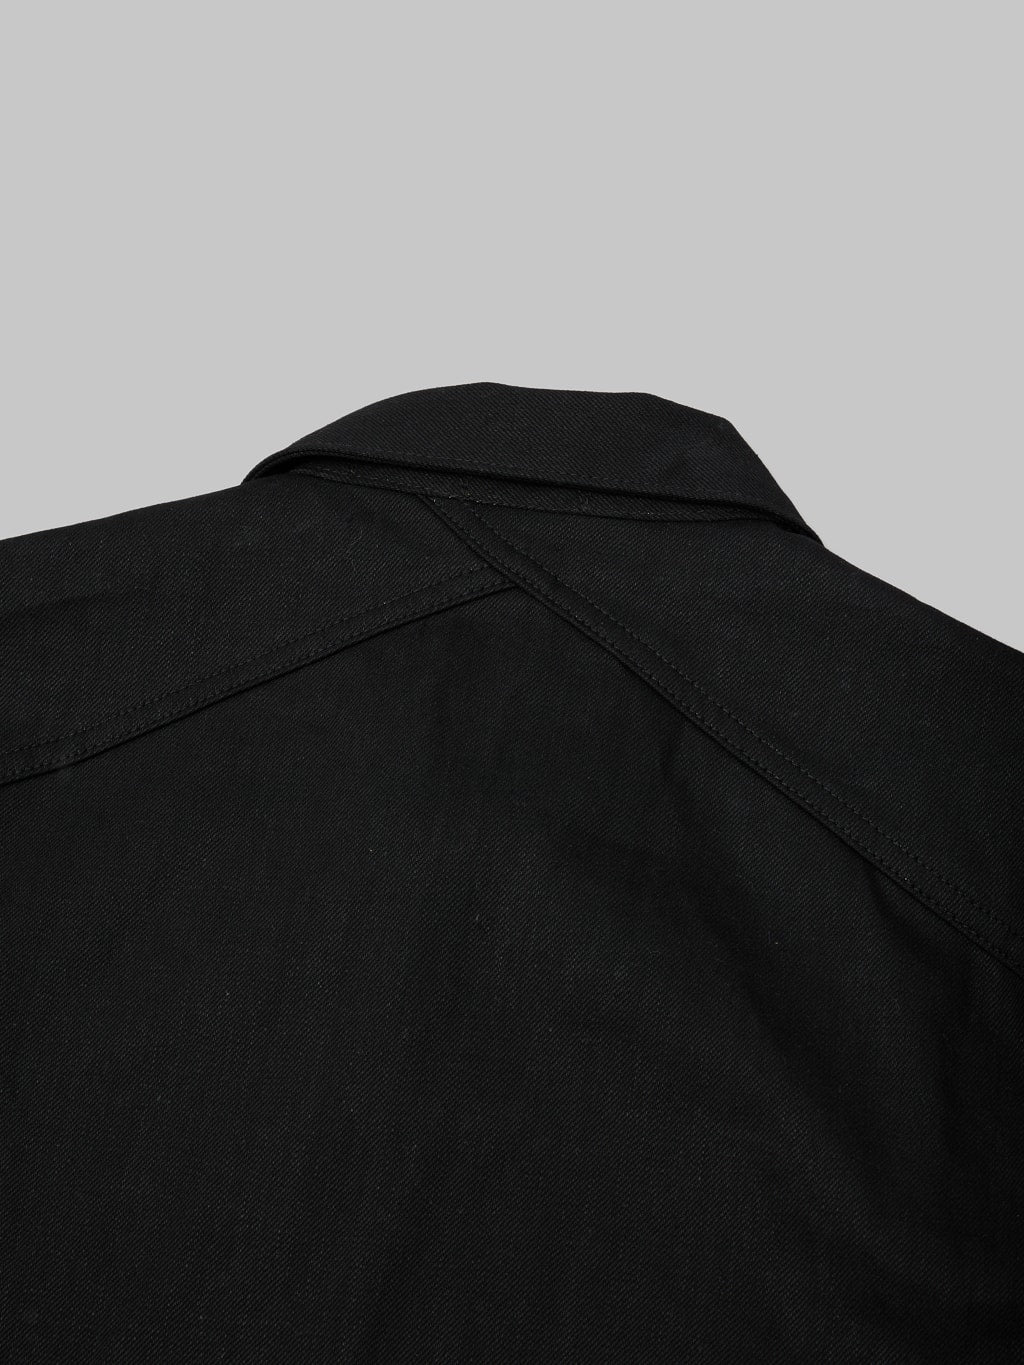 3sixteen type III denim jacket double black selvedge back yoke 